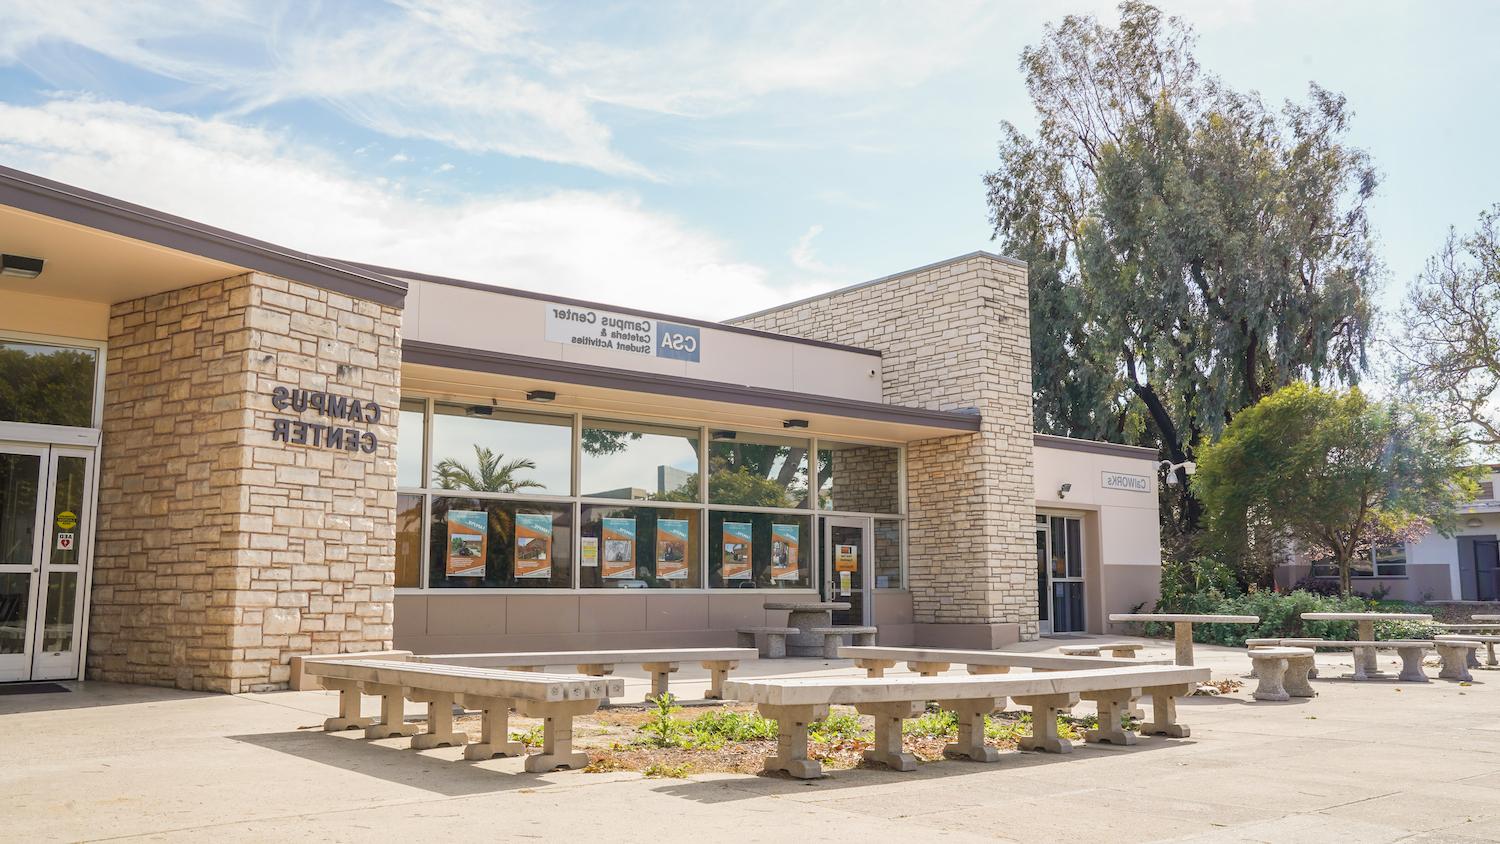 Ventura College Campus Center